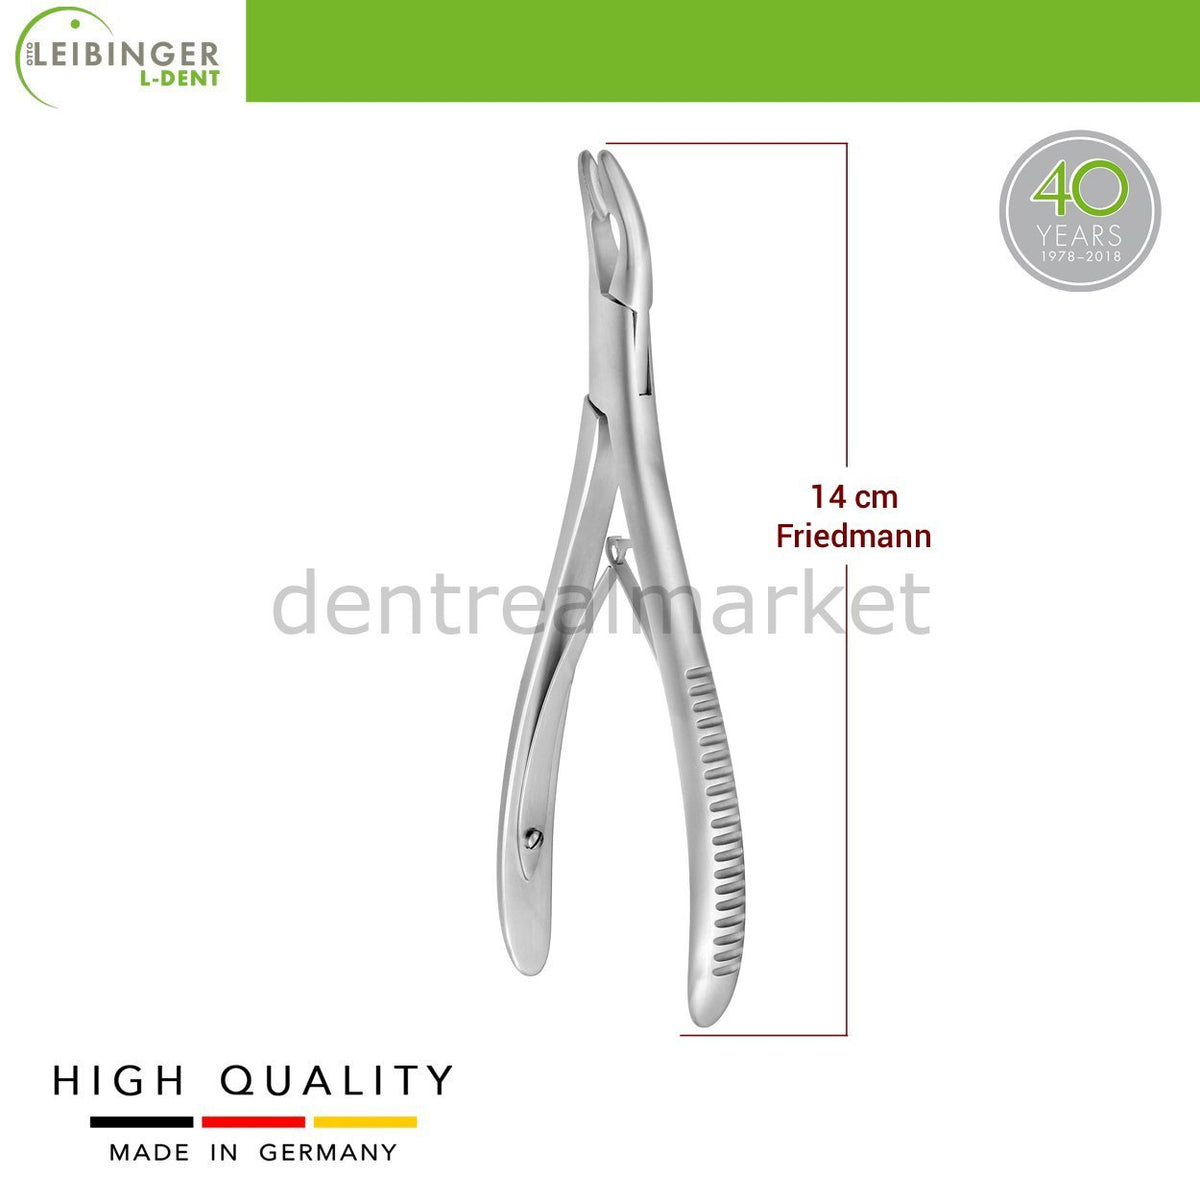 DentrealStore - Leibinger Friedmann Bone Rongeur - Dental Bone Rongeur 14cm